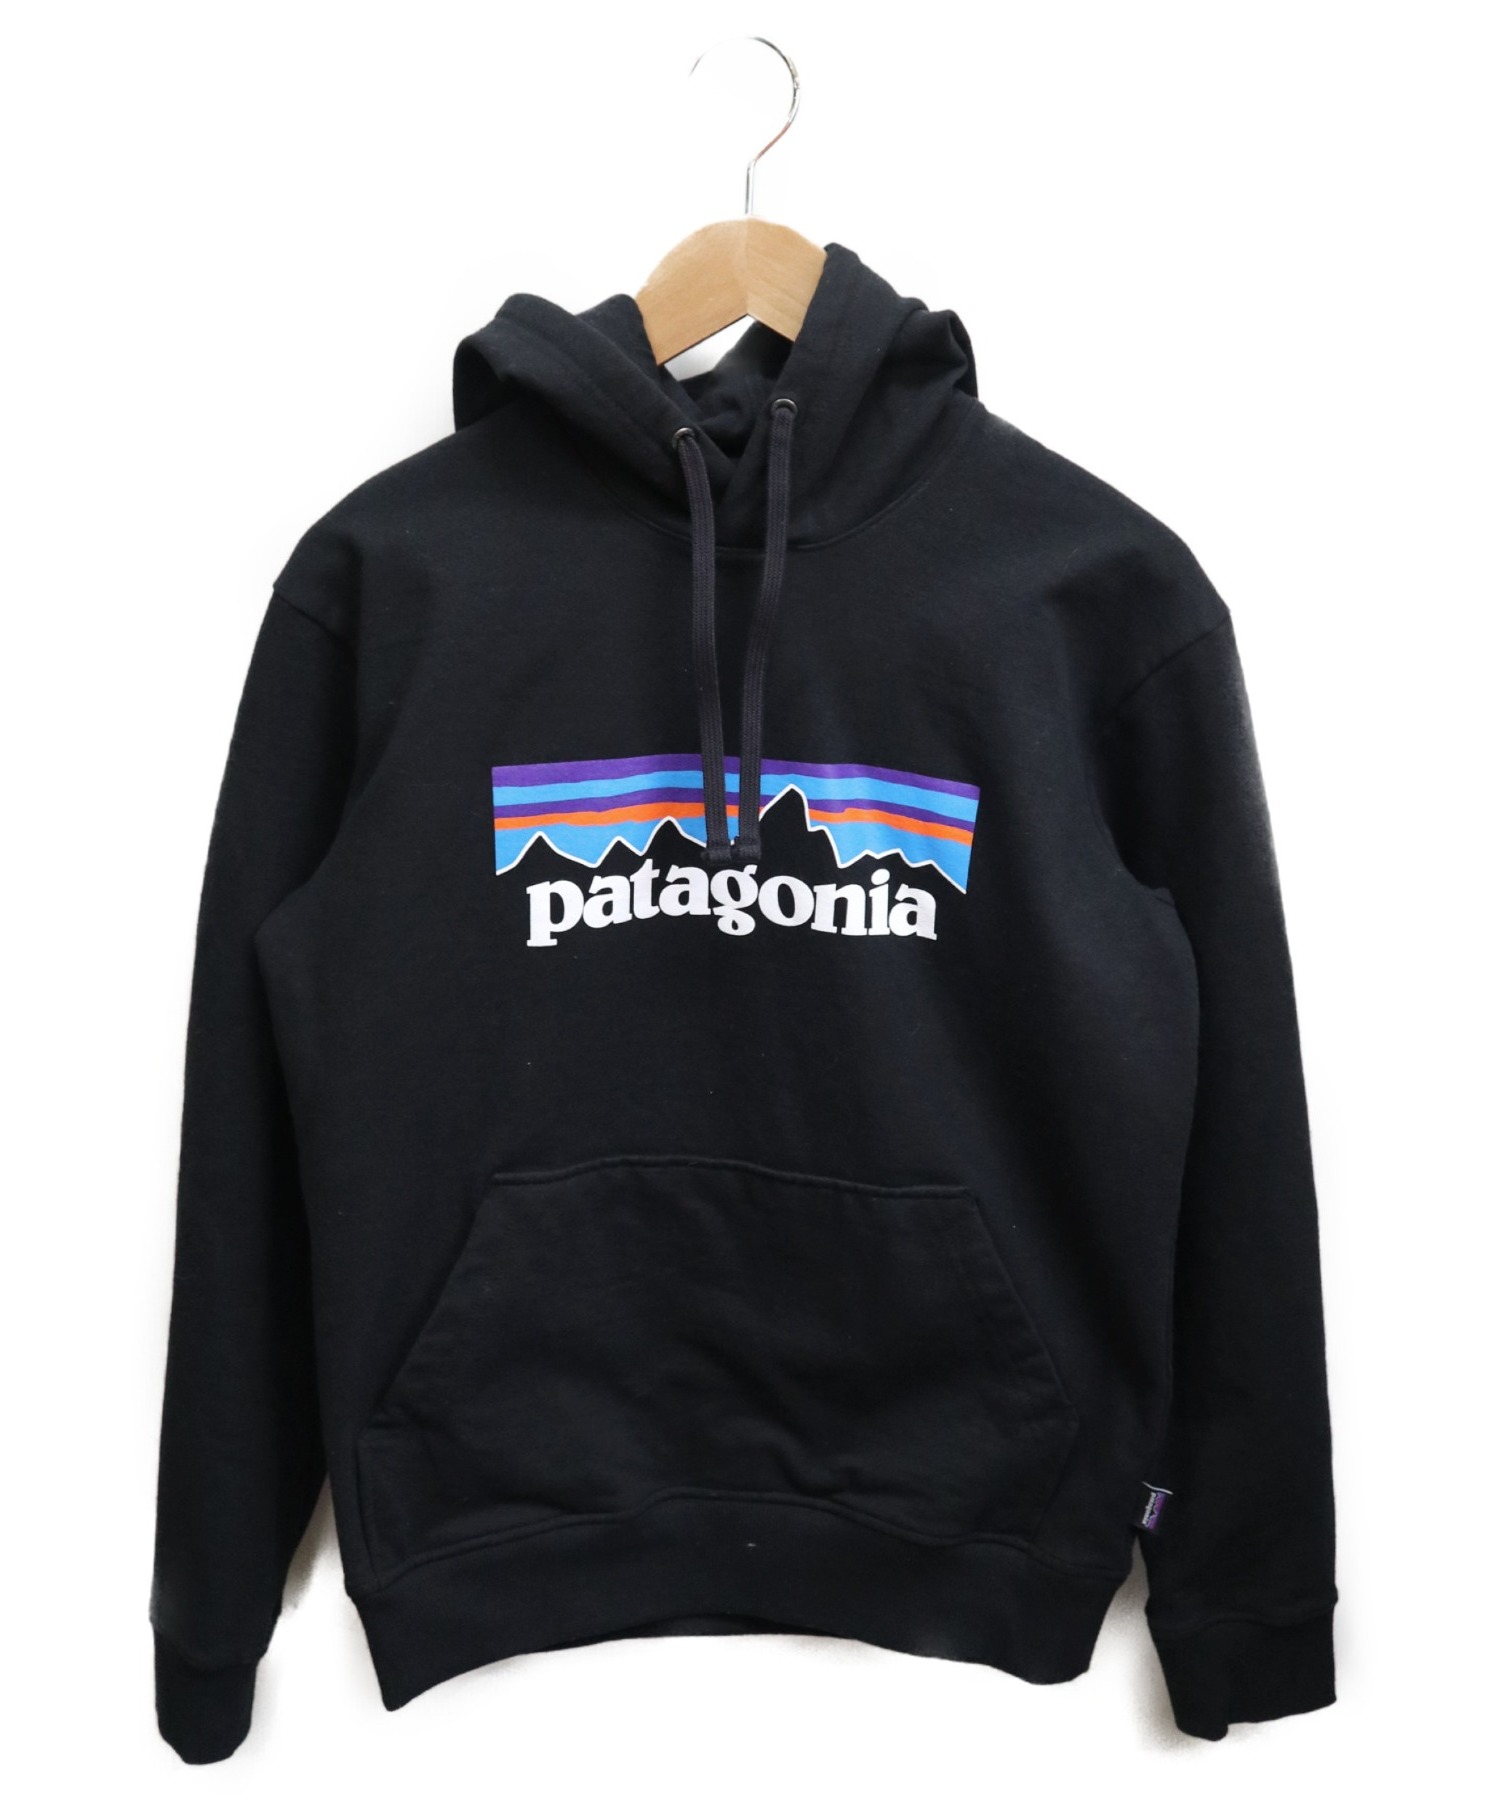 Patagoniaデカロゴパーカー - パーカー